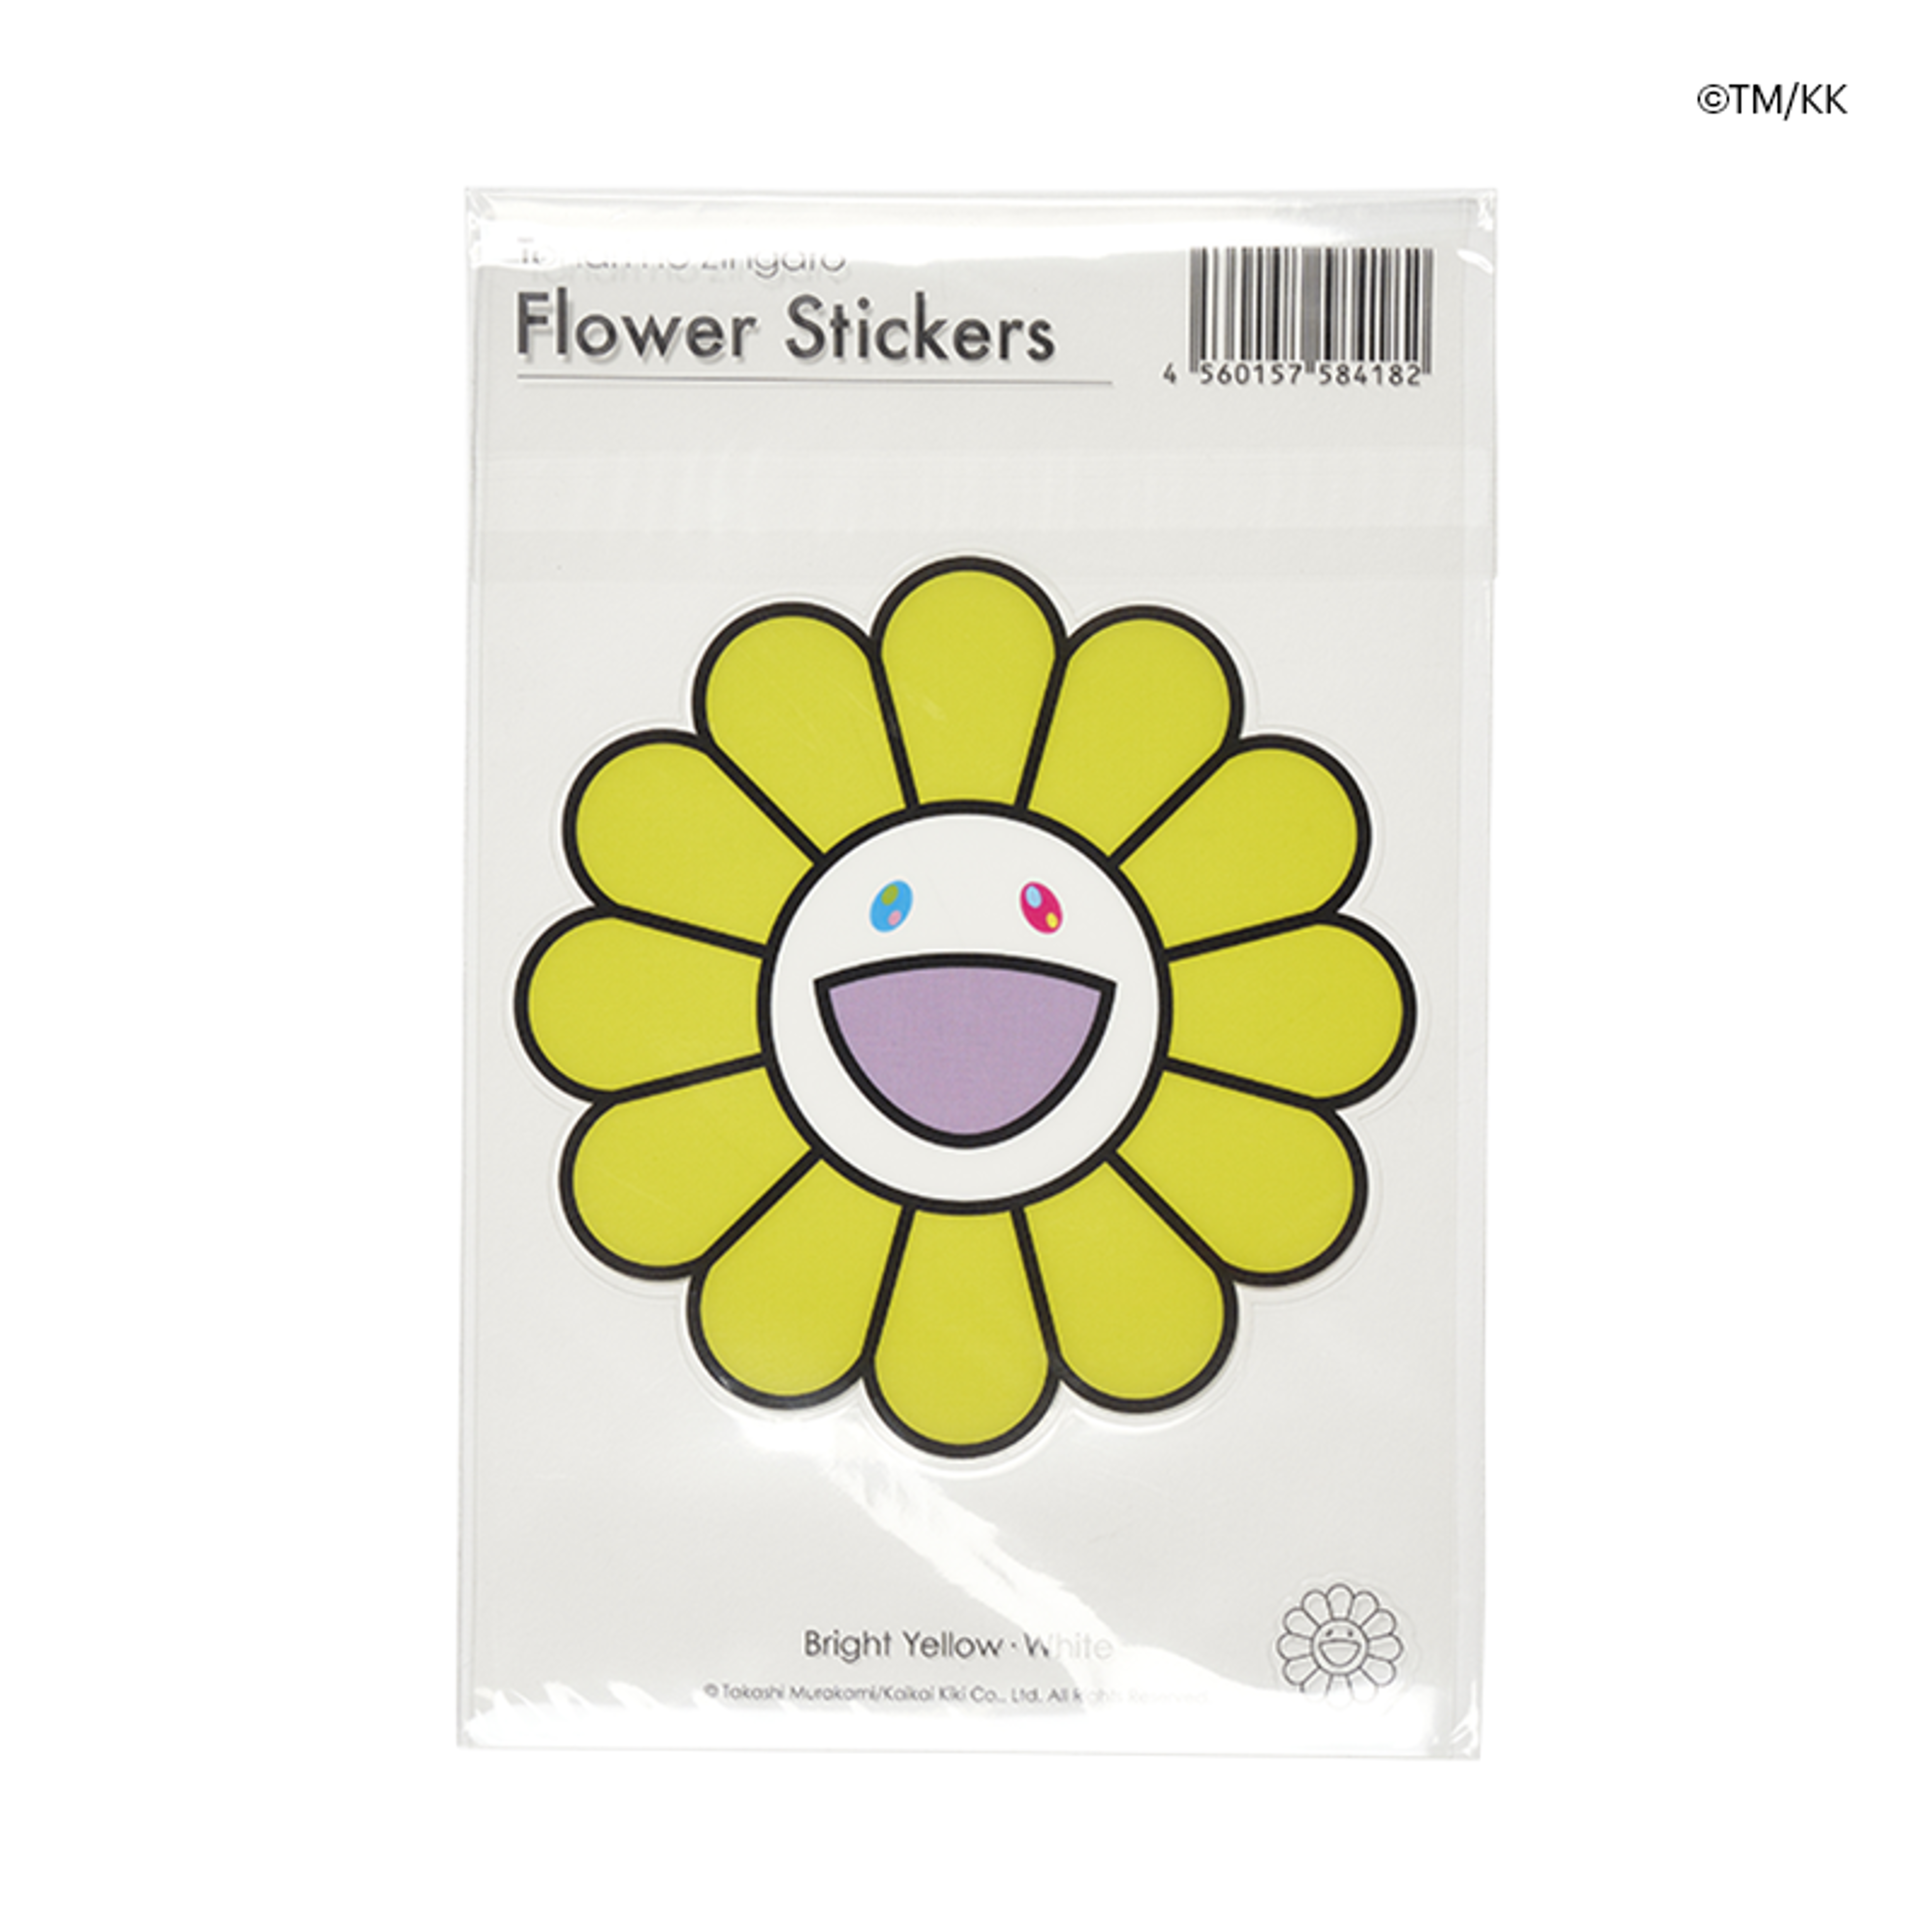 ©TM/KK Flower Stickers / Bright Yellow × White